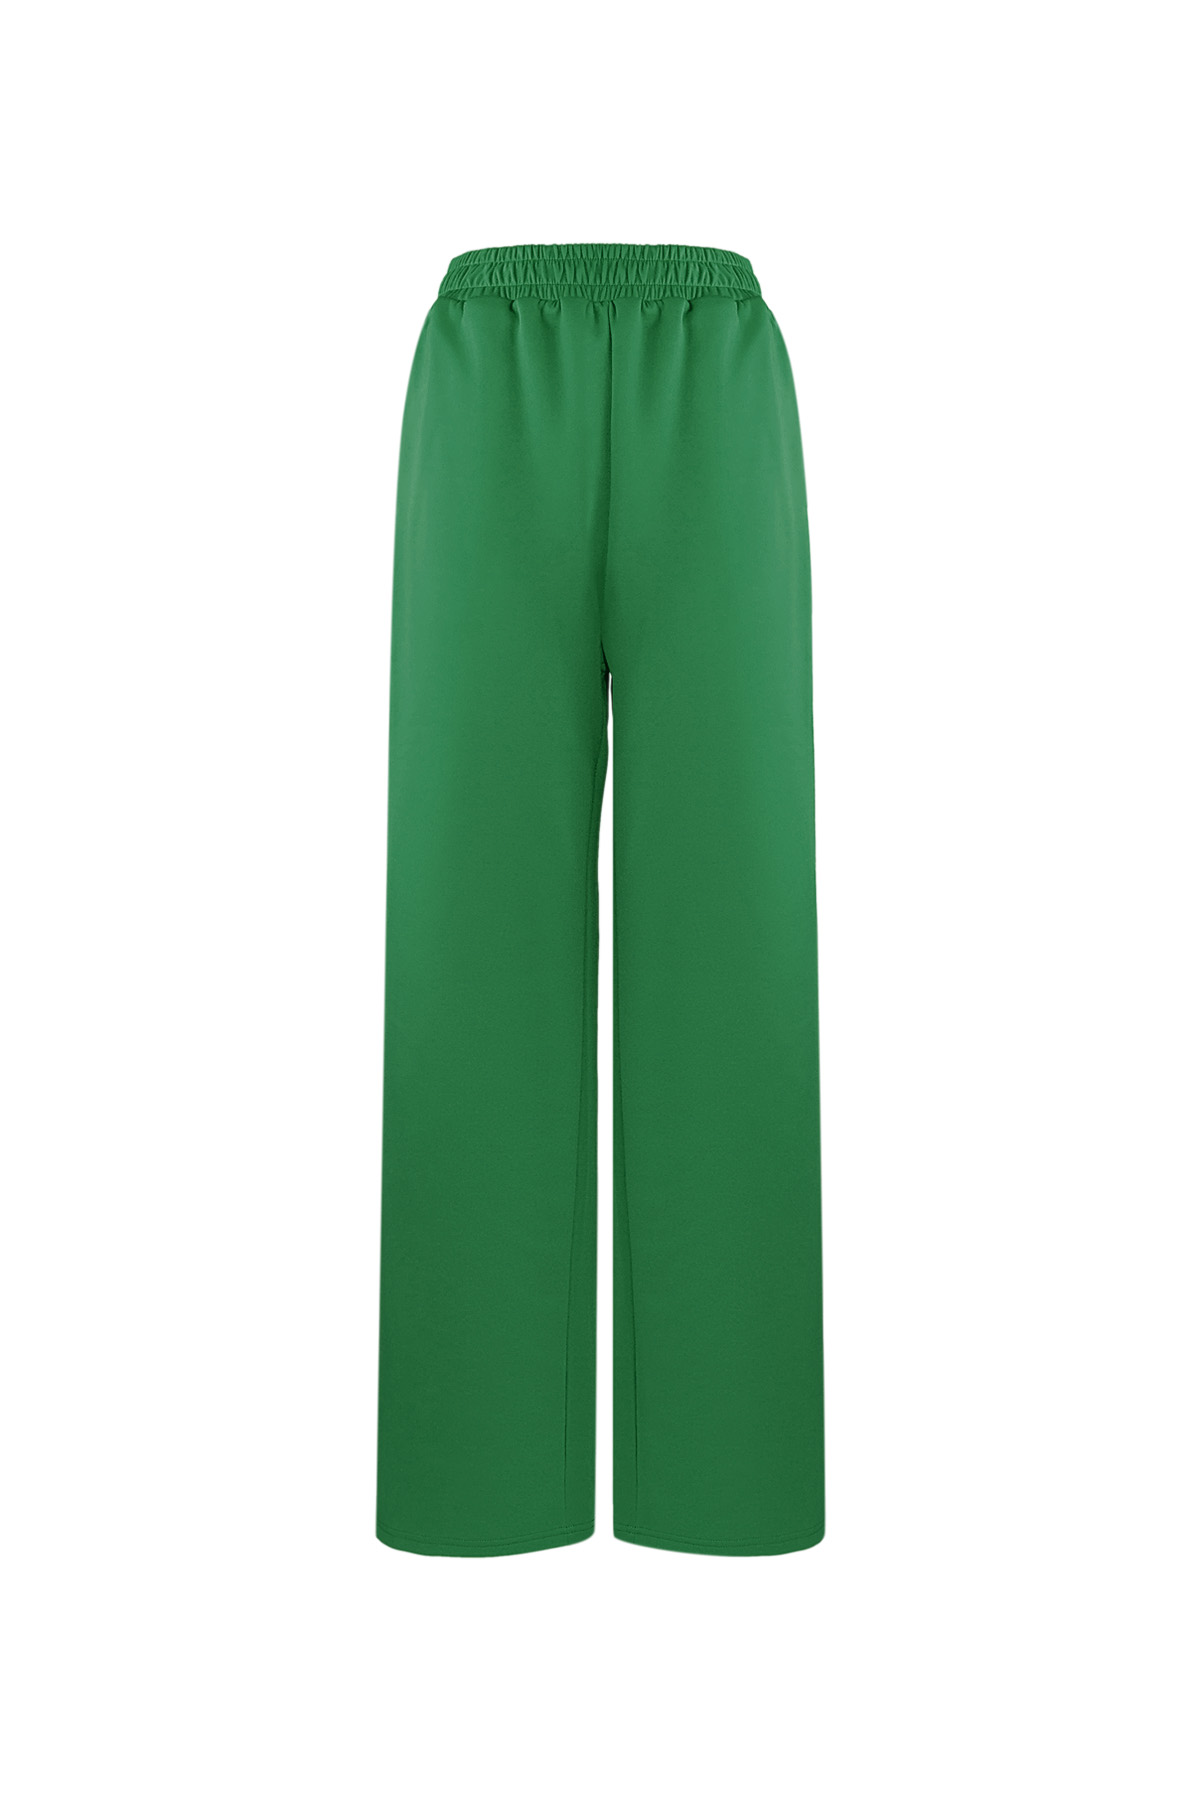 Pantalón imprescindible a rayas - verde S 